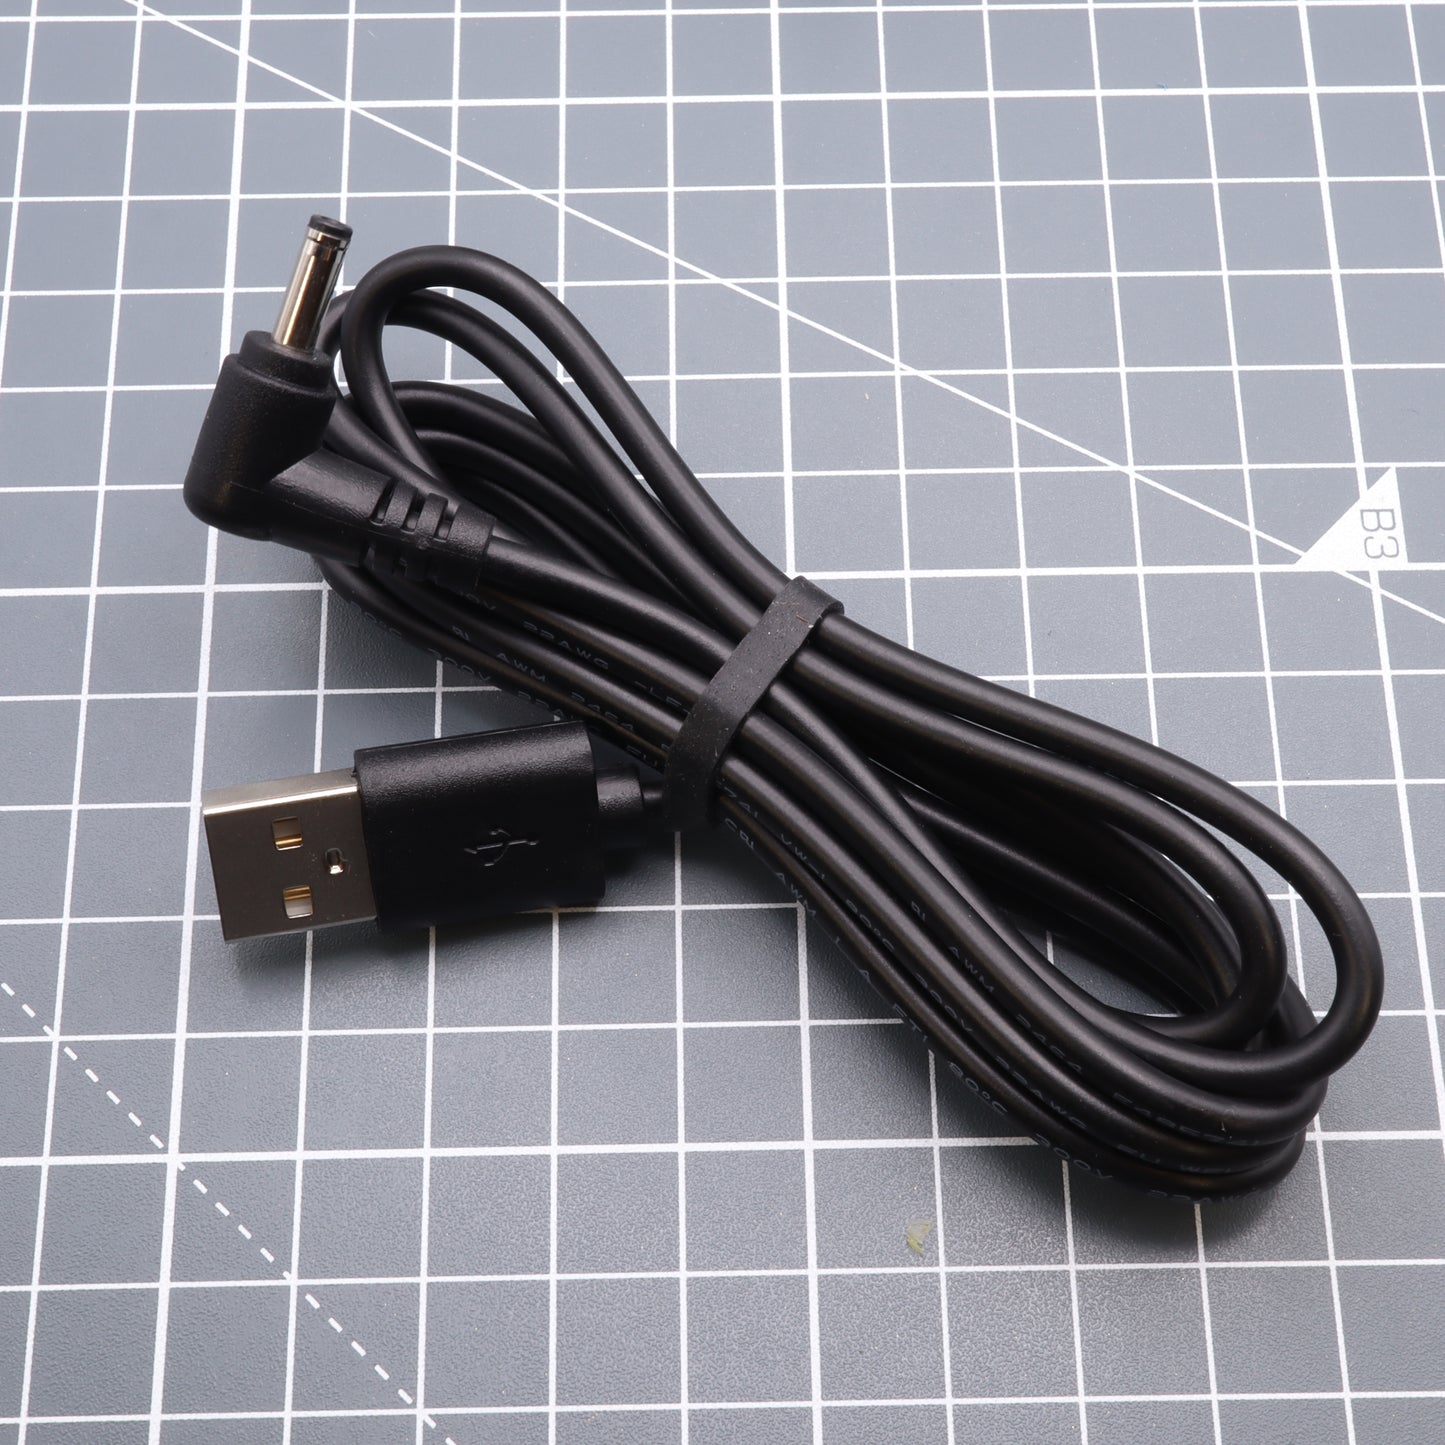 Game Boy Original DMG-01 5v USB Power Cable